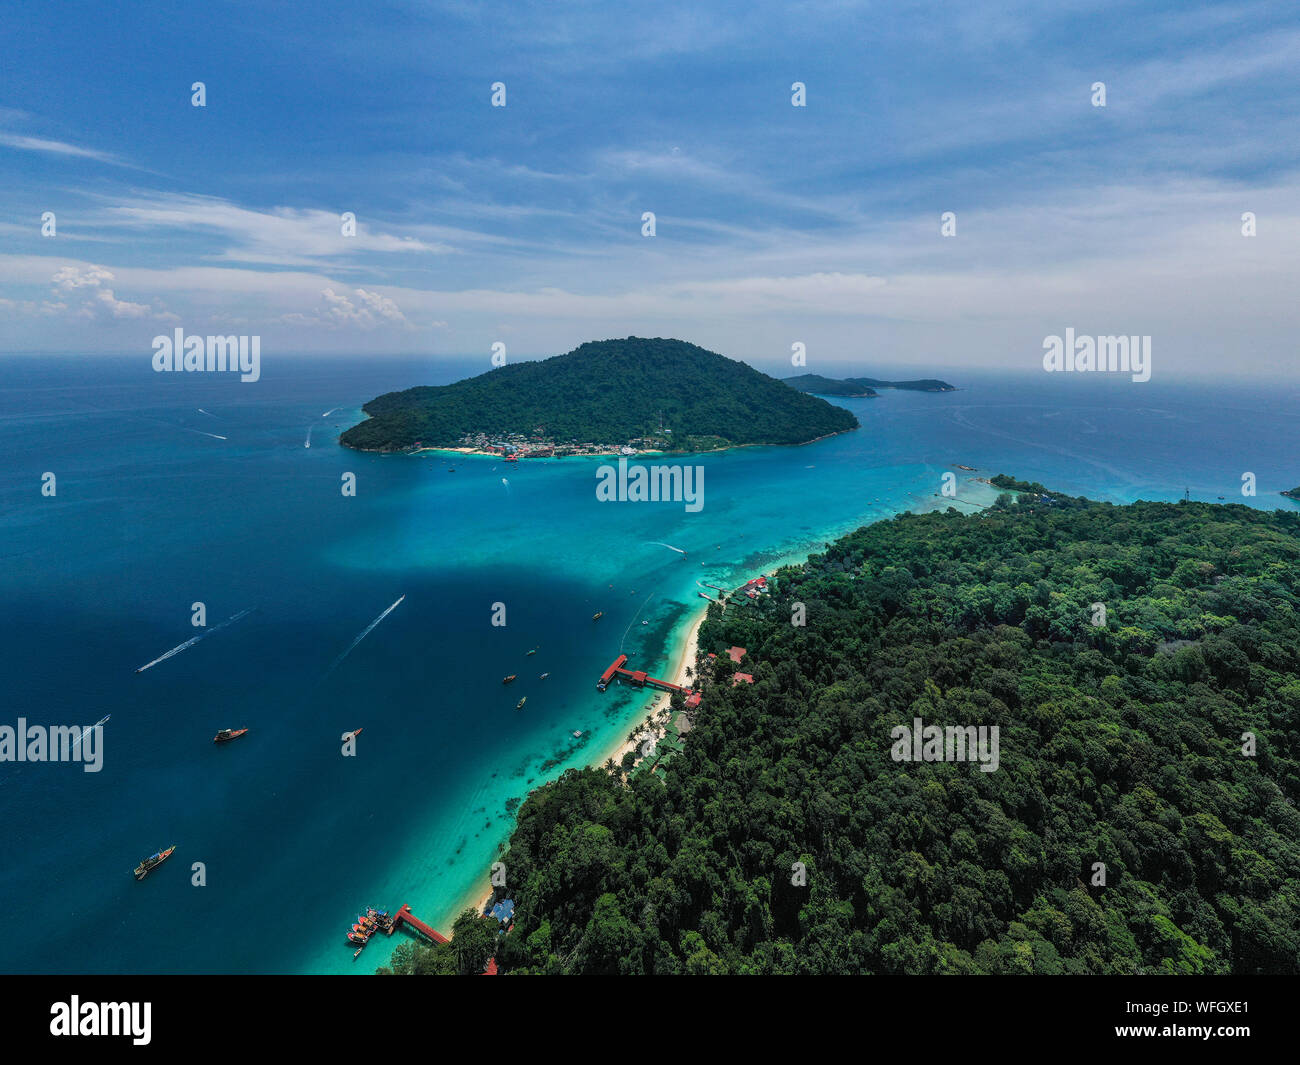 Aerial view of Pulau Perhentian Besar and Pulau Perhentian Kecil islands, Tenrengganu, Malaysia Stock Photo